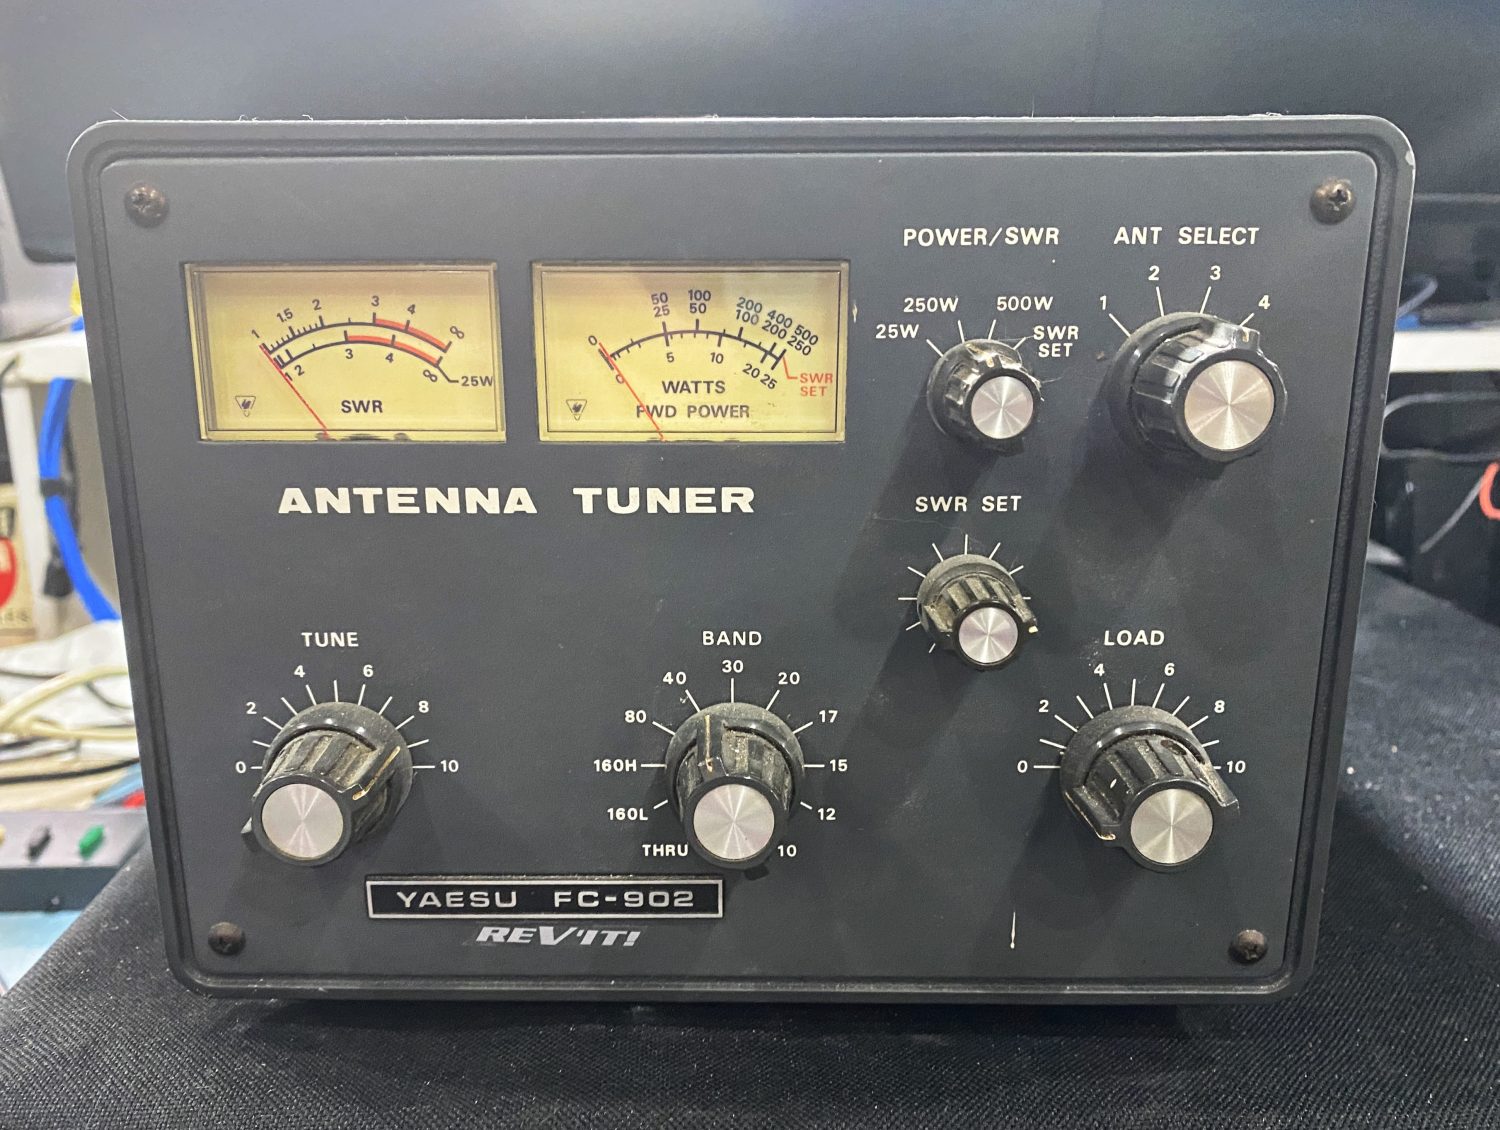 Yaesu FC-902 Antenna Tuner - This was always my preferred Tuner